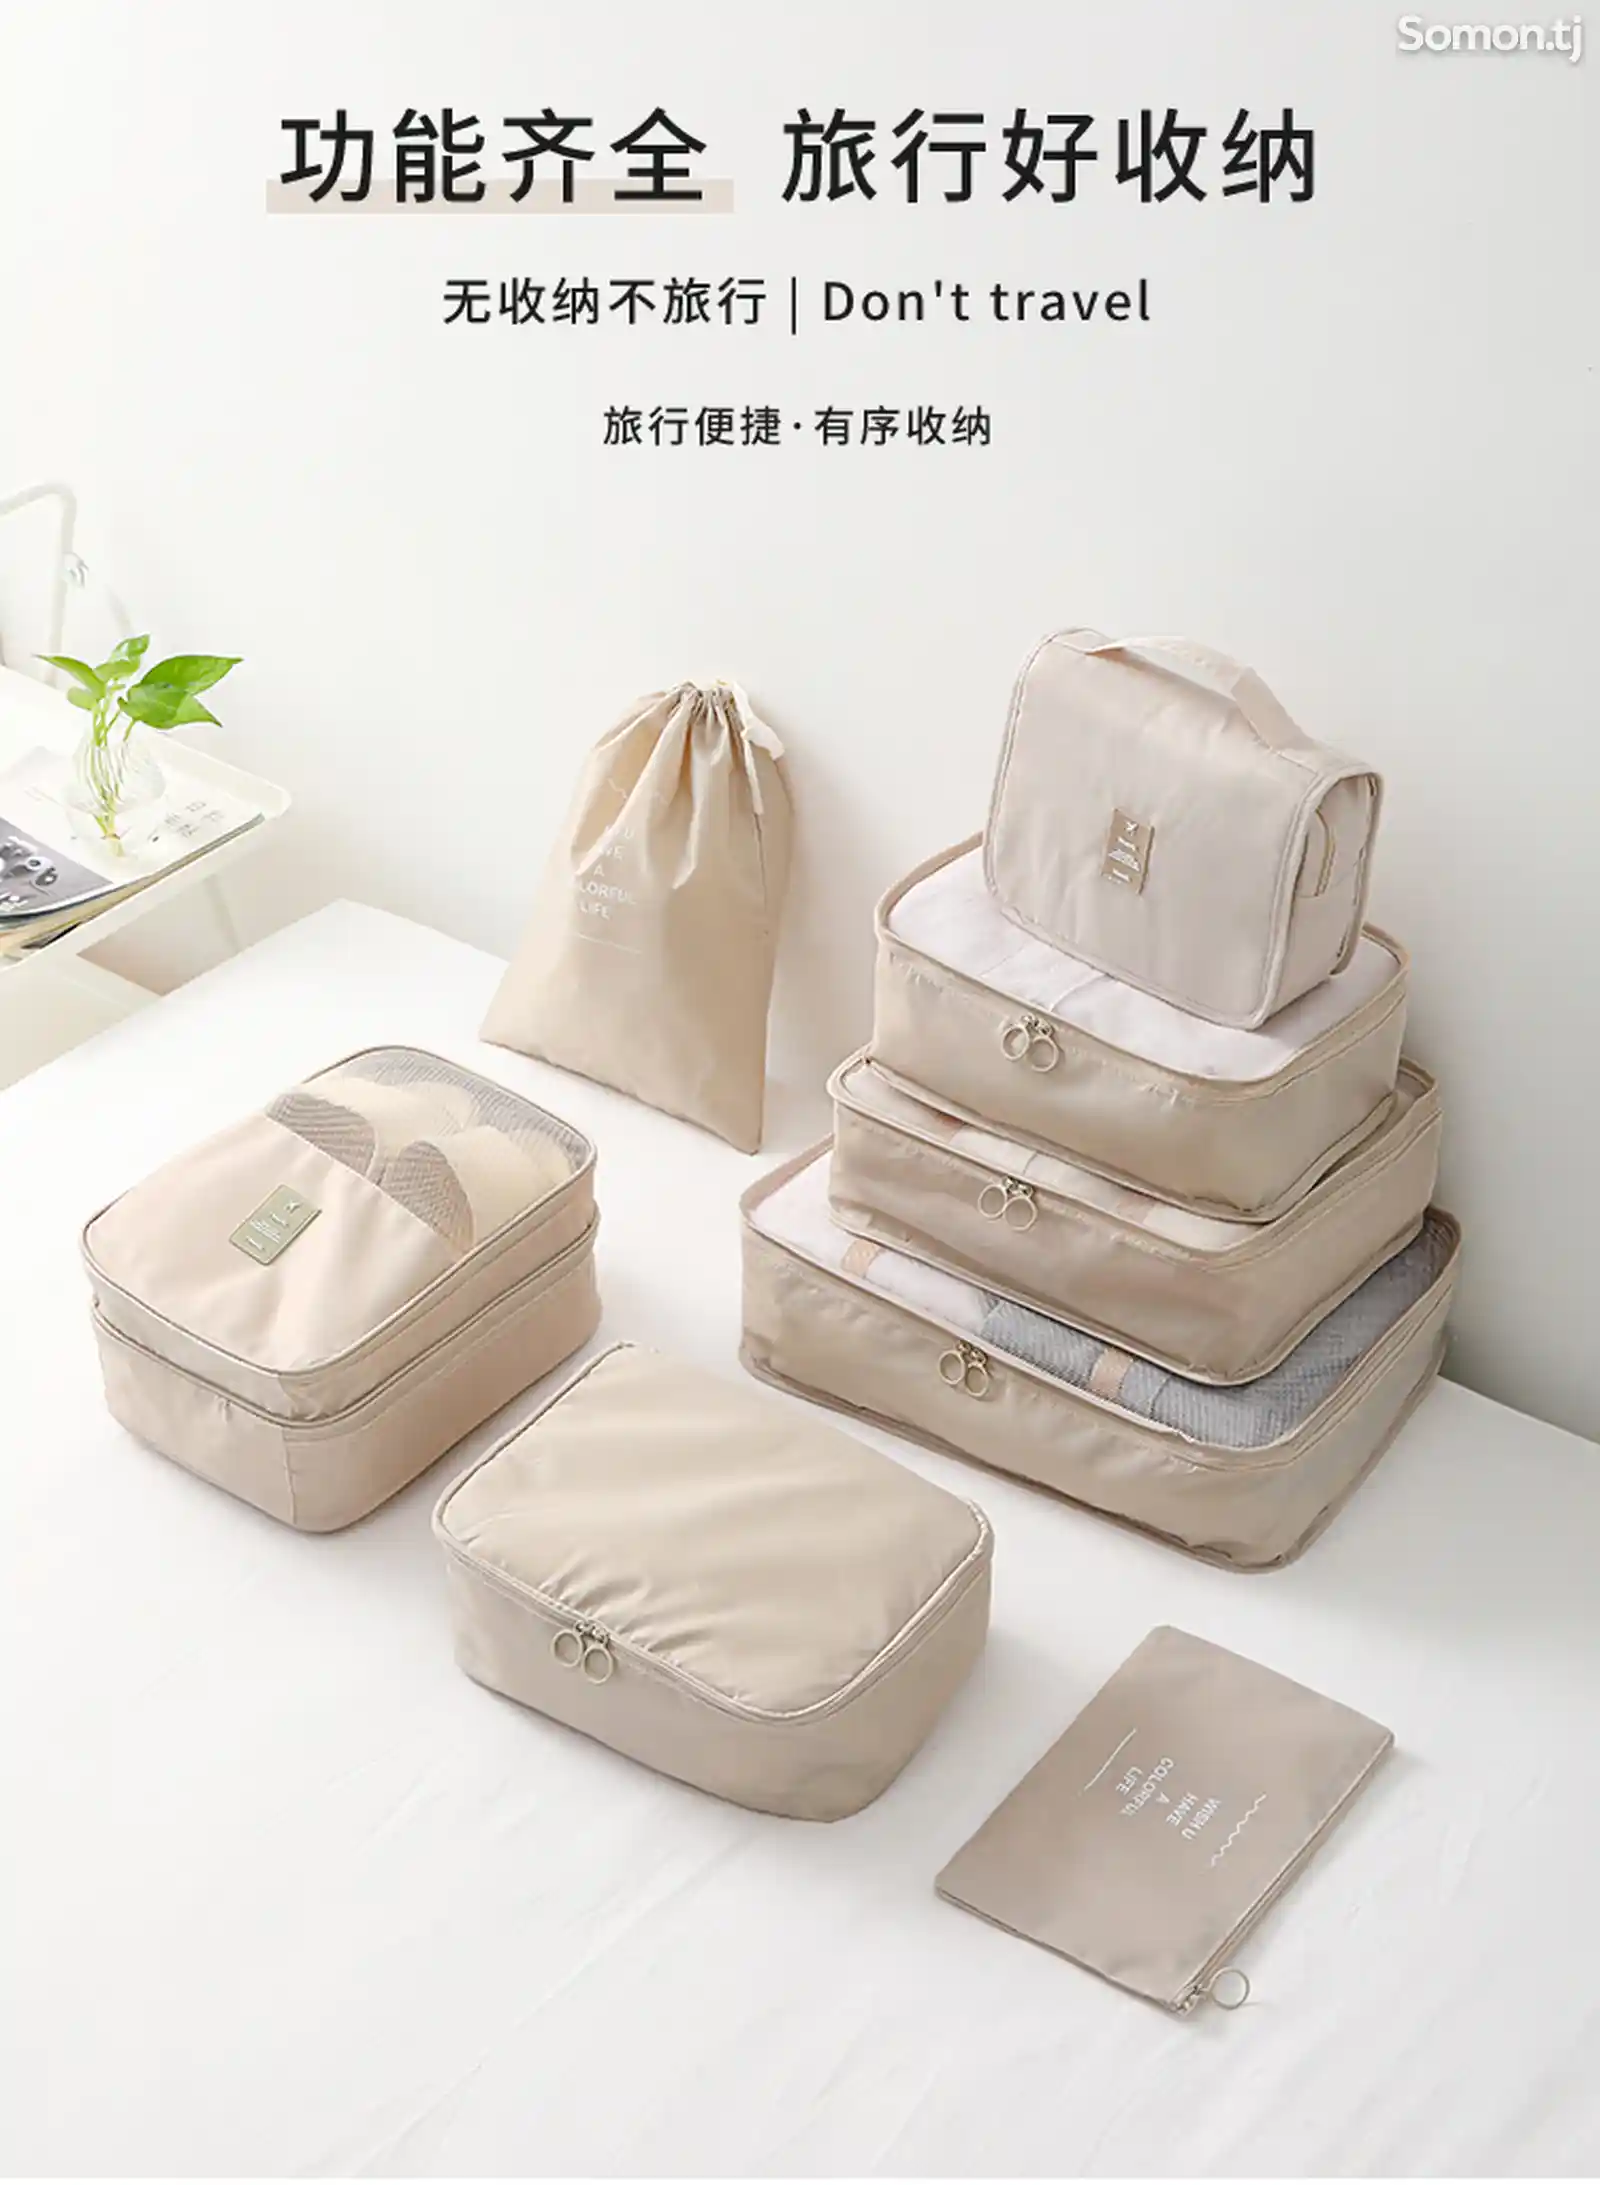 Японская дорожная сумка для хранения вещей-12